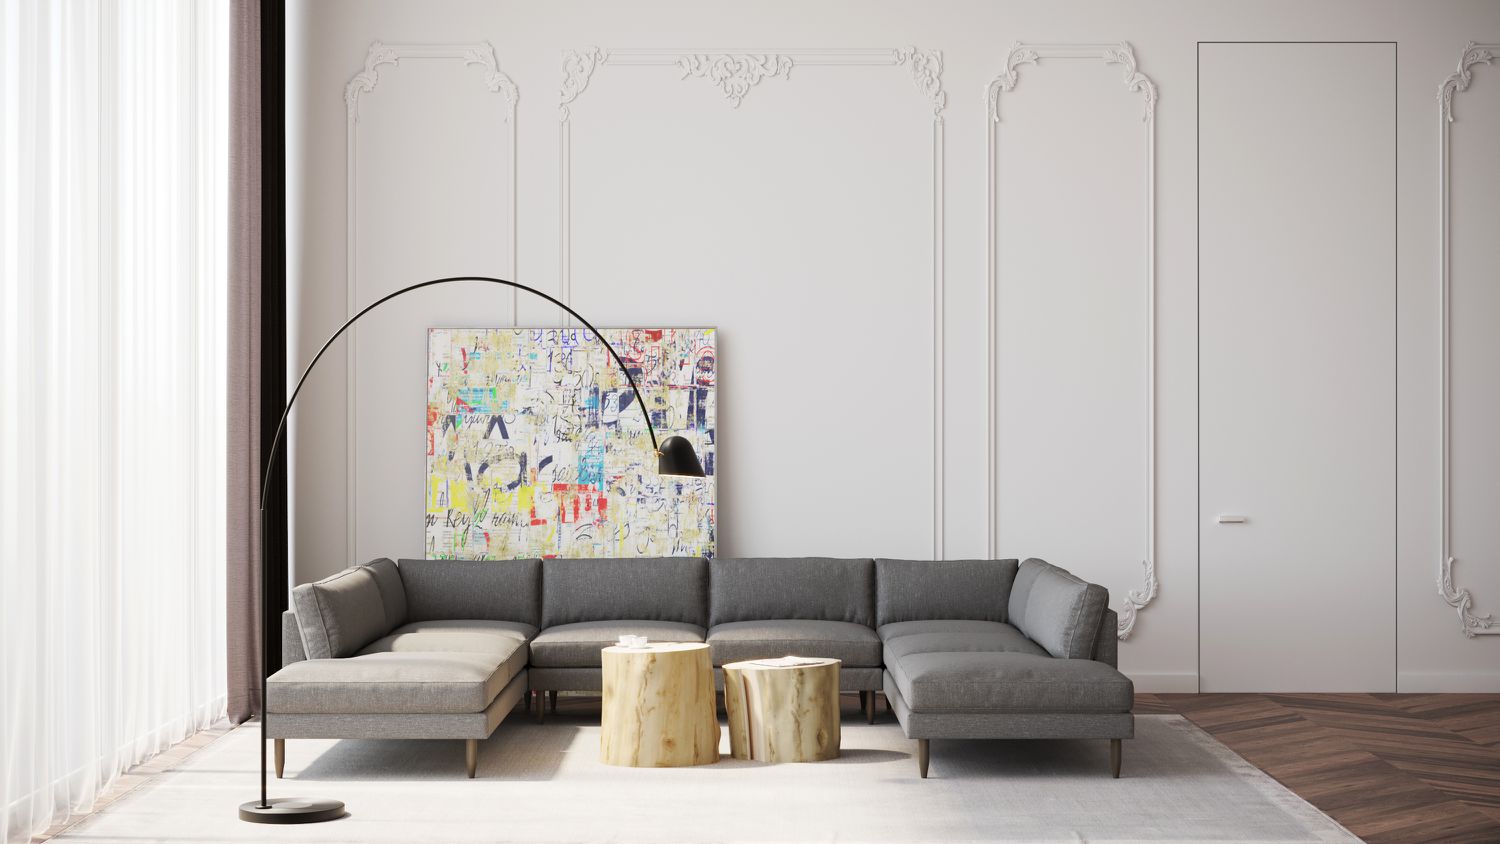 Graues Sektionssofa in einem Raum mit hohen, strukturierten weißen Wänden